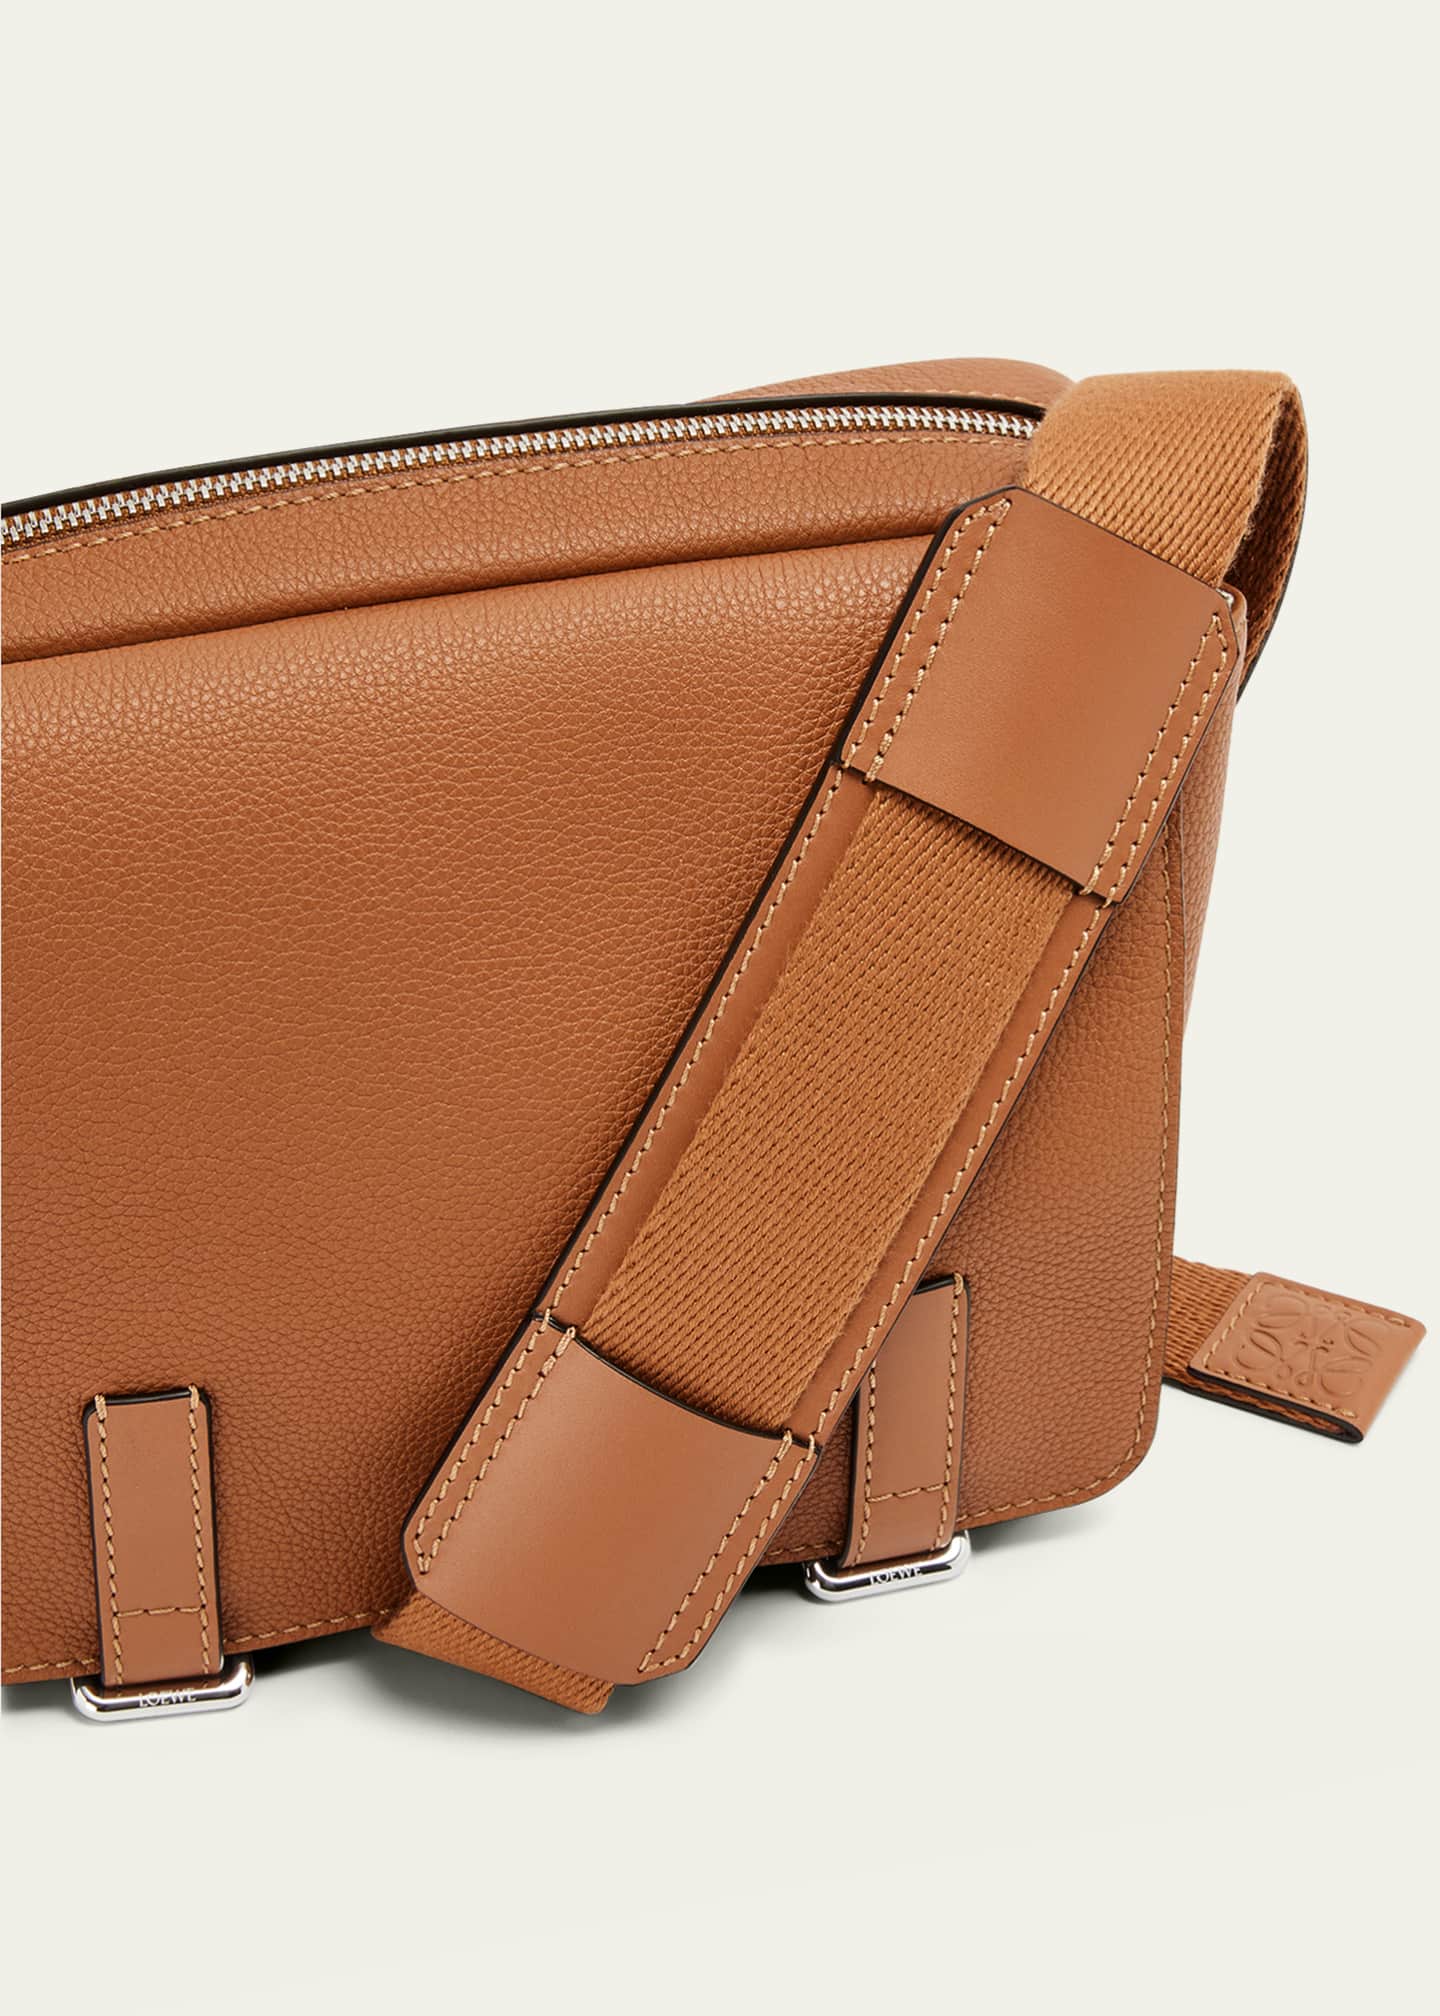 LOEWE Military Full-Grain Leather Messenger Bag for Men